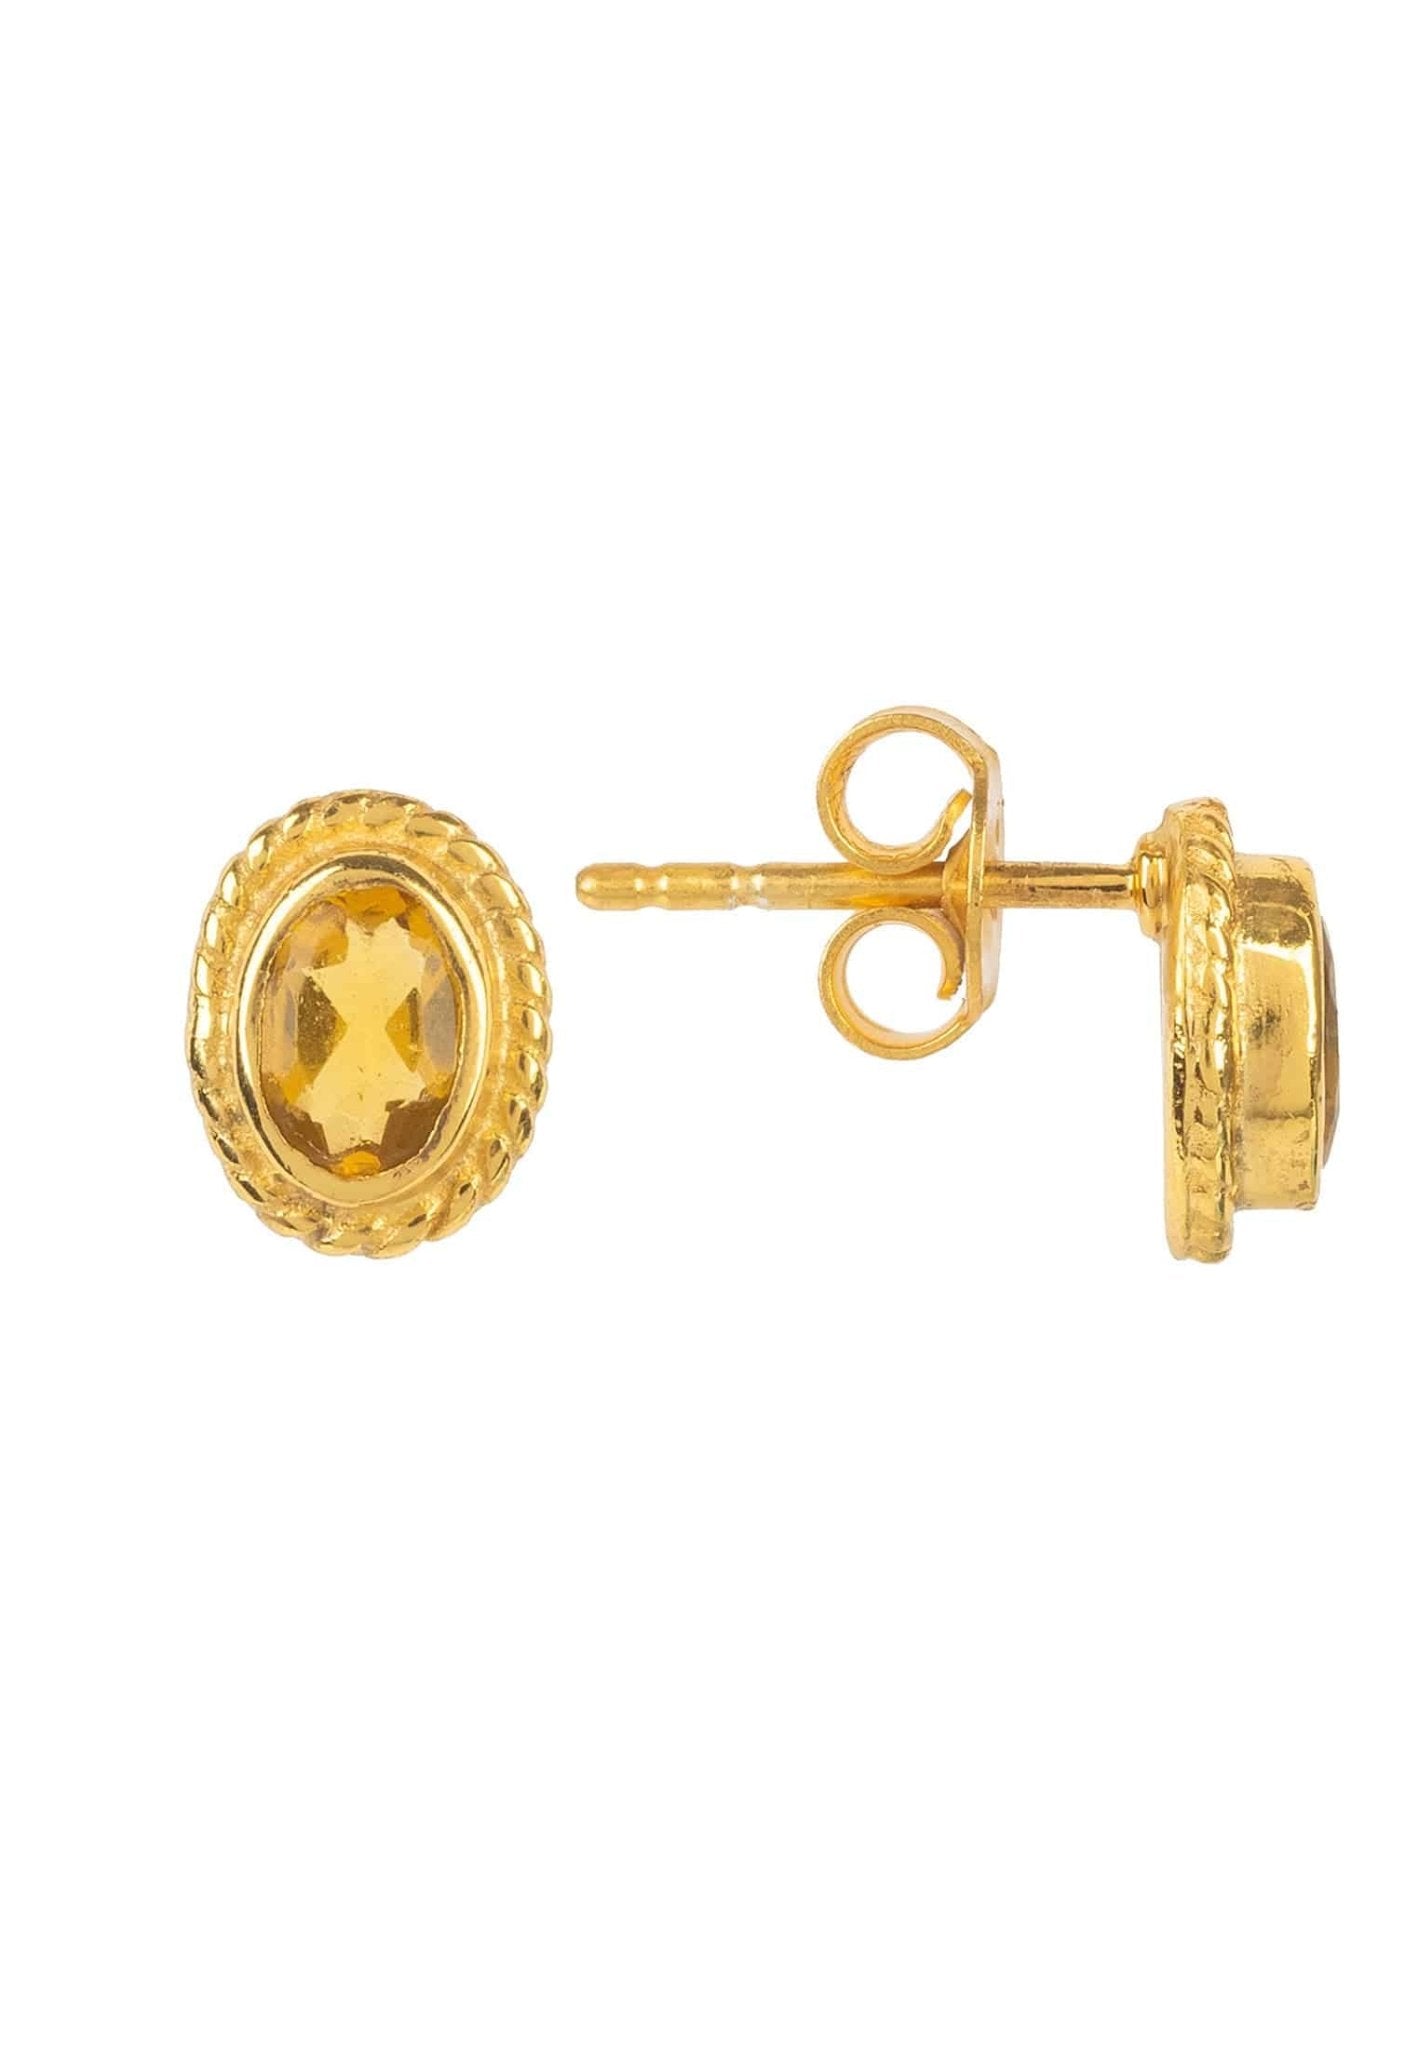 Birthstone Gold Gemstone Stud Earring November Citrine - LATELITA Earrings